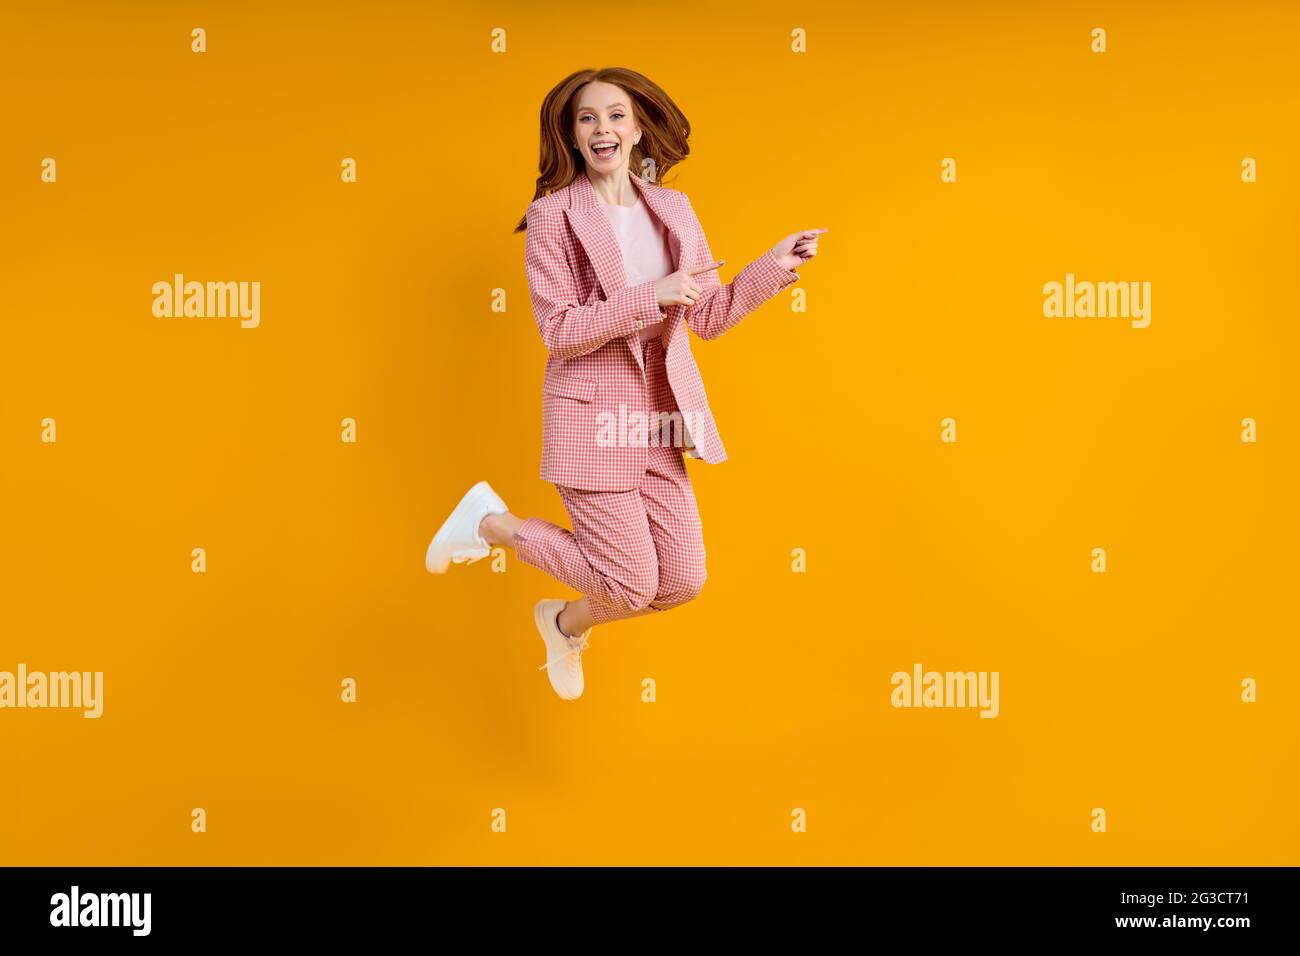 Femme d'affaires réussie en costume sautant doigt d'index sur le côté, isolé sur fond jaune, shopping. Portrait. Espace de copie Banque D'Images